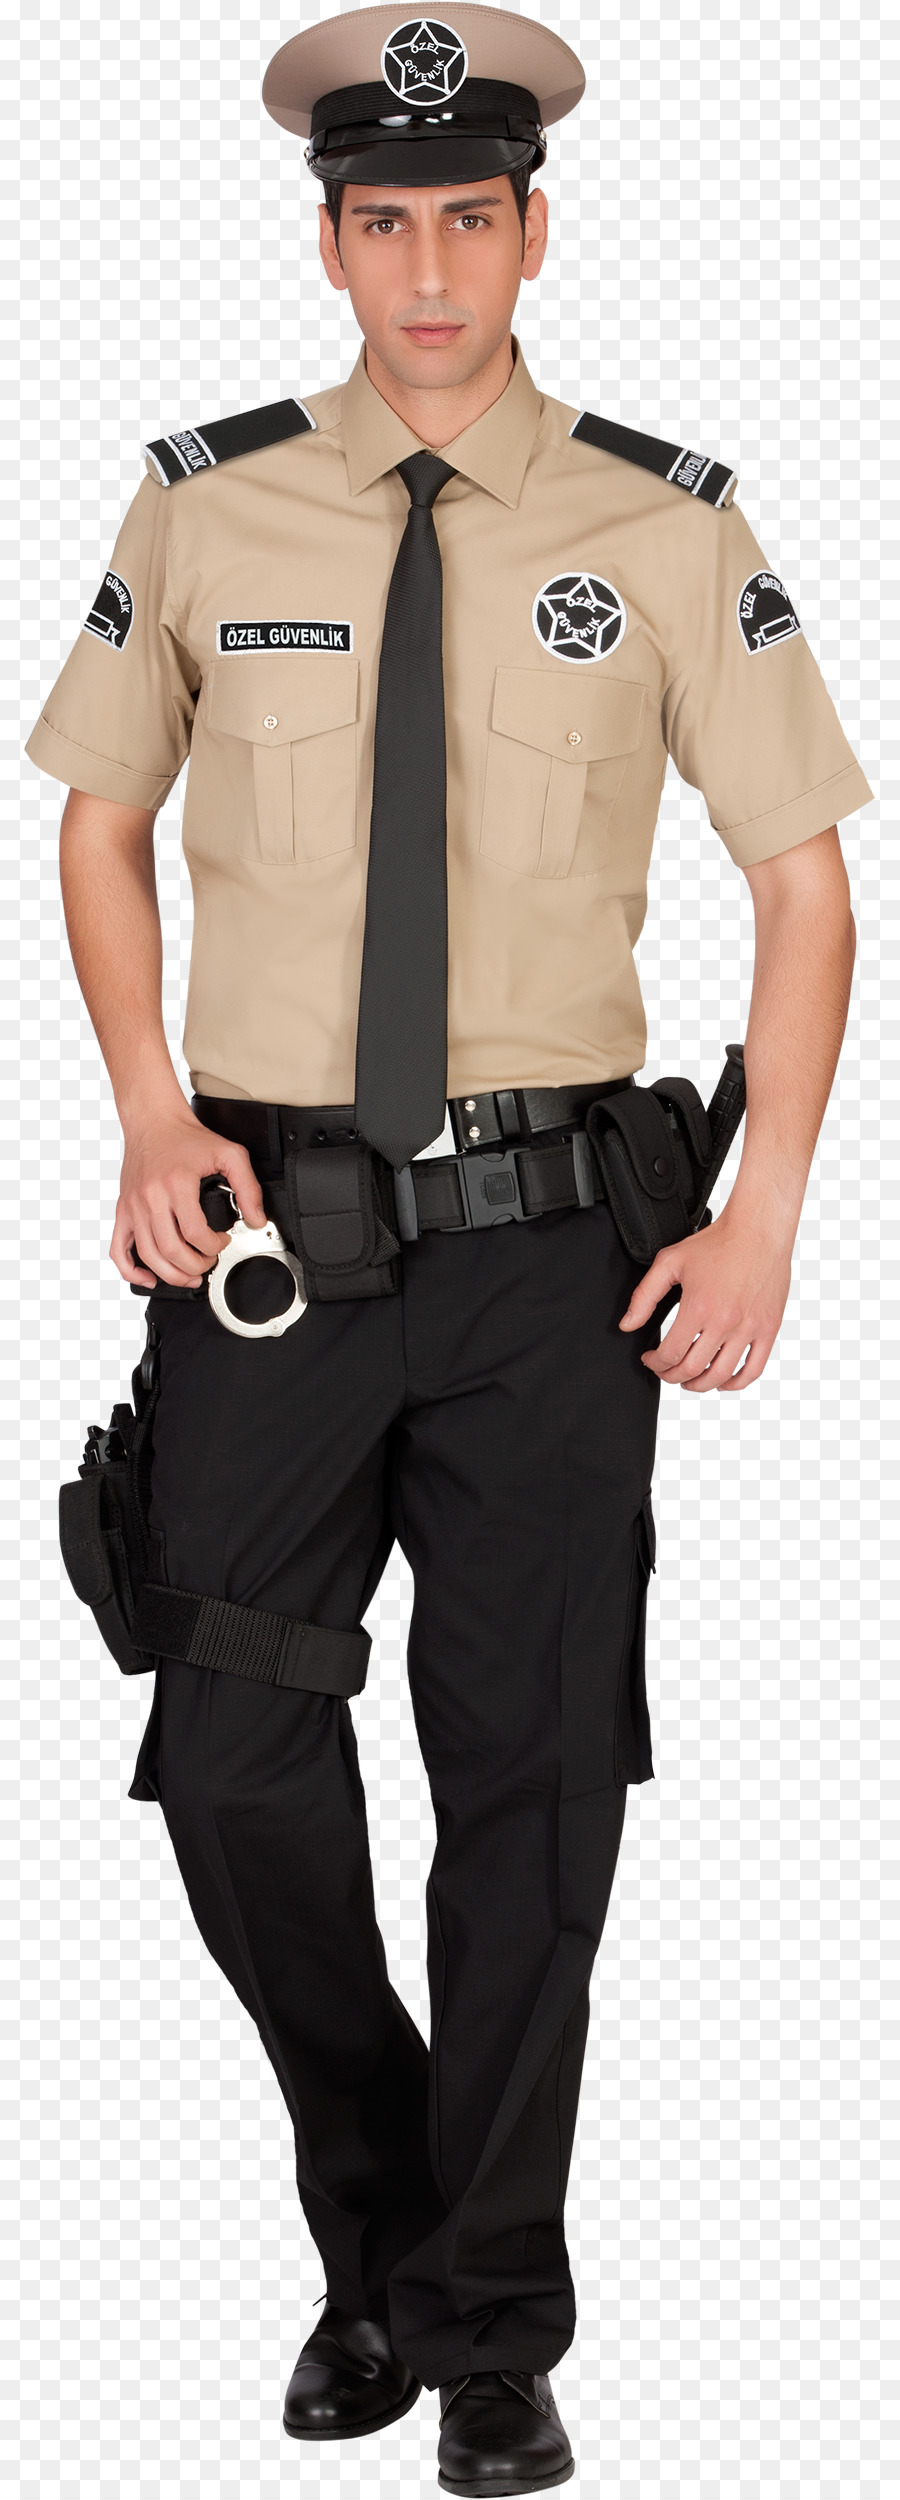 ضابط شرطة الأمن الزي العسكري صورة بابوا نيو غينيا